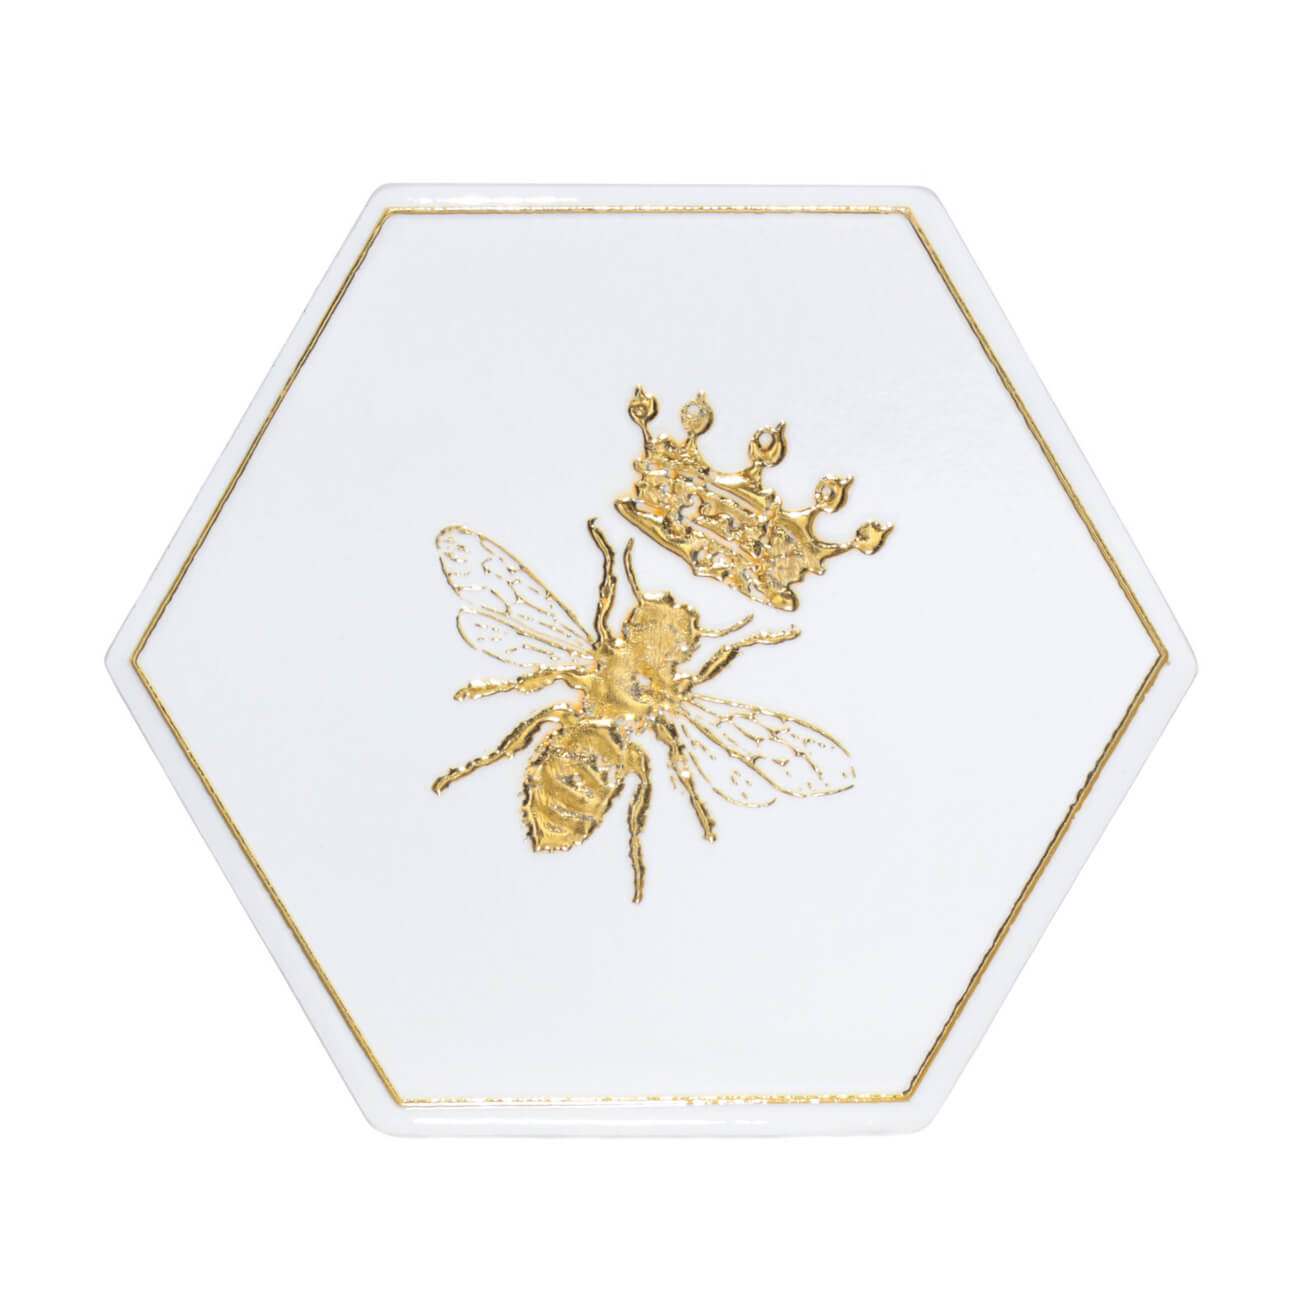 Подставка под кружку, 11 см, керамика/пробка, шестиугольная, белая, Королевская пчела, Honey габонская шестиугольная плантатор 100x90x100 см